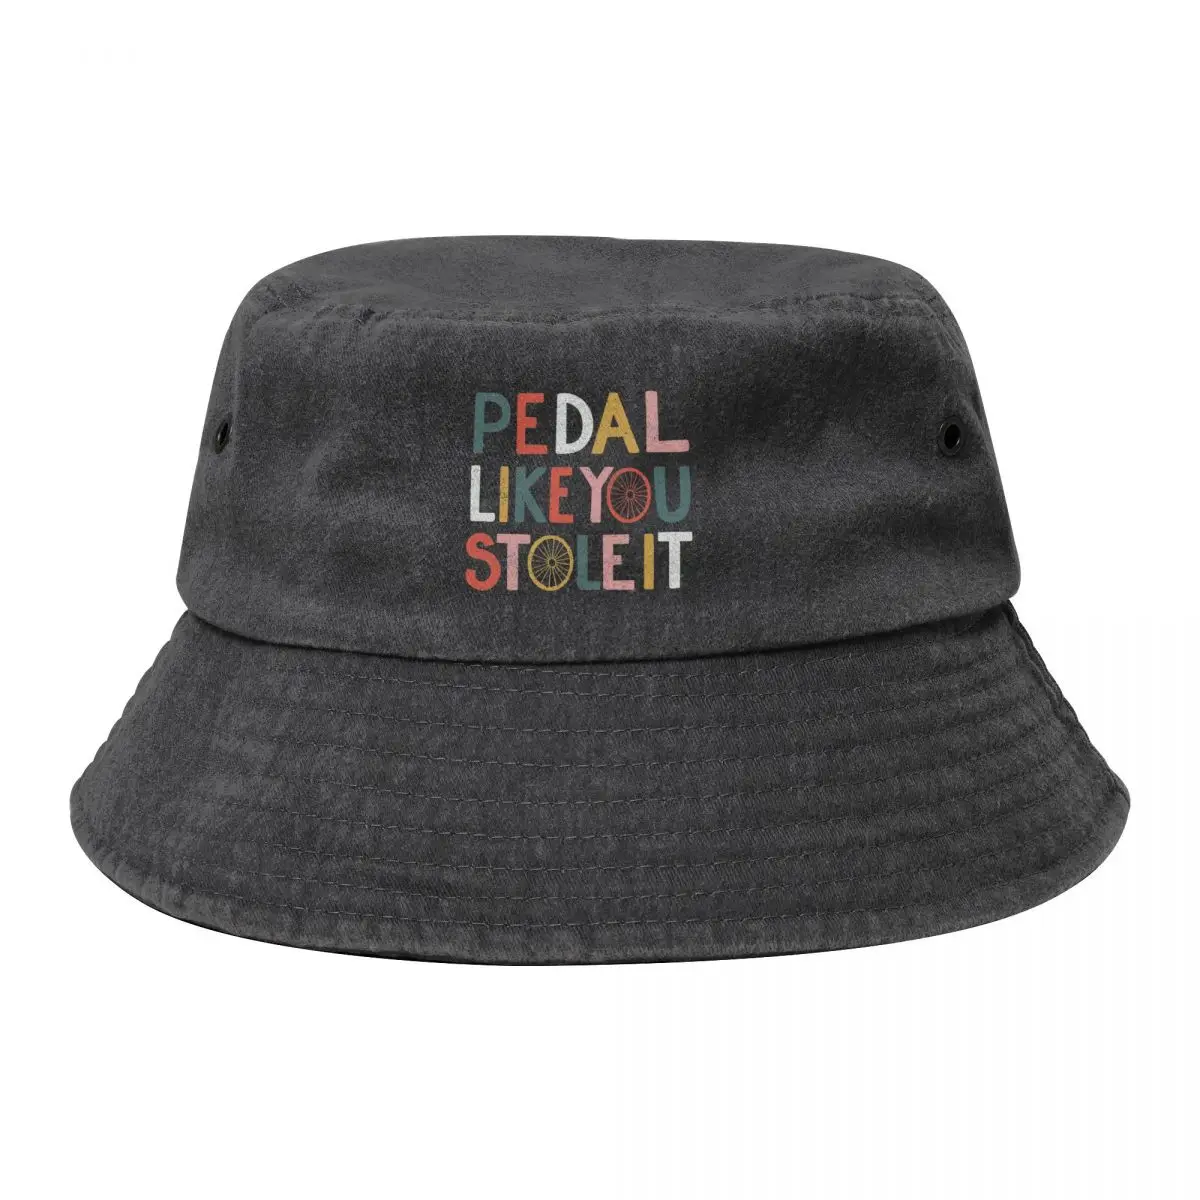 

Pedal like you stole it Bucket Hat Dropshipping Trucker Cap Men Luxury Brand Women's